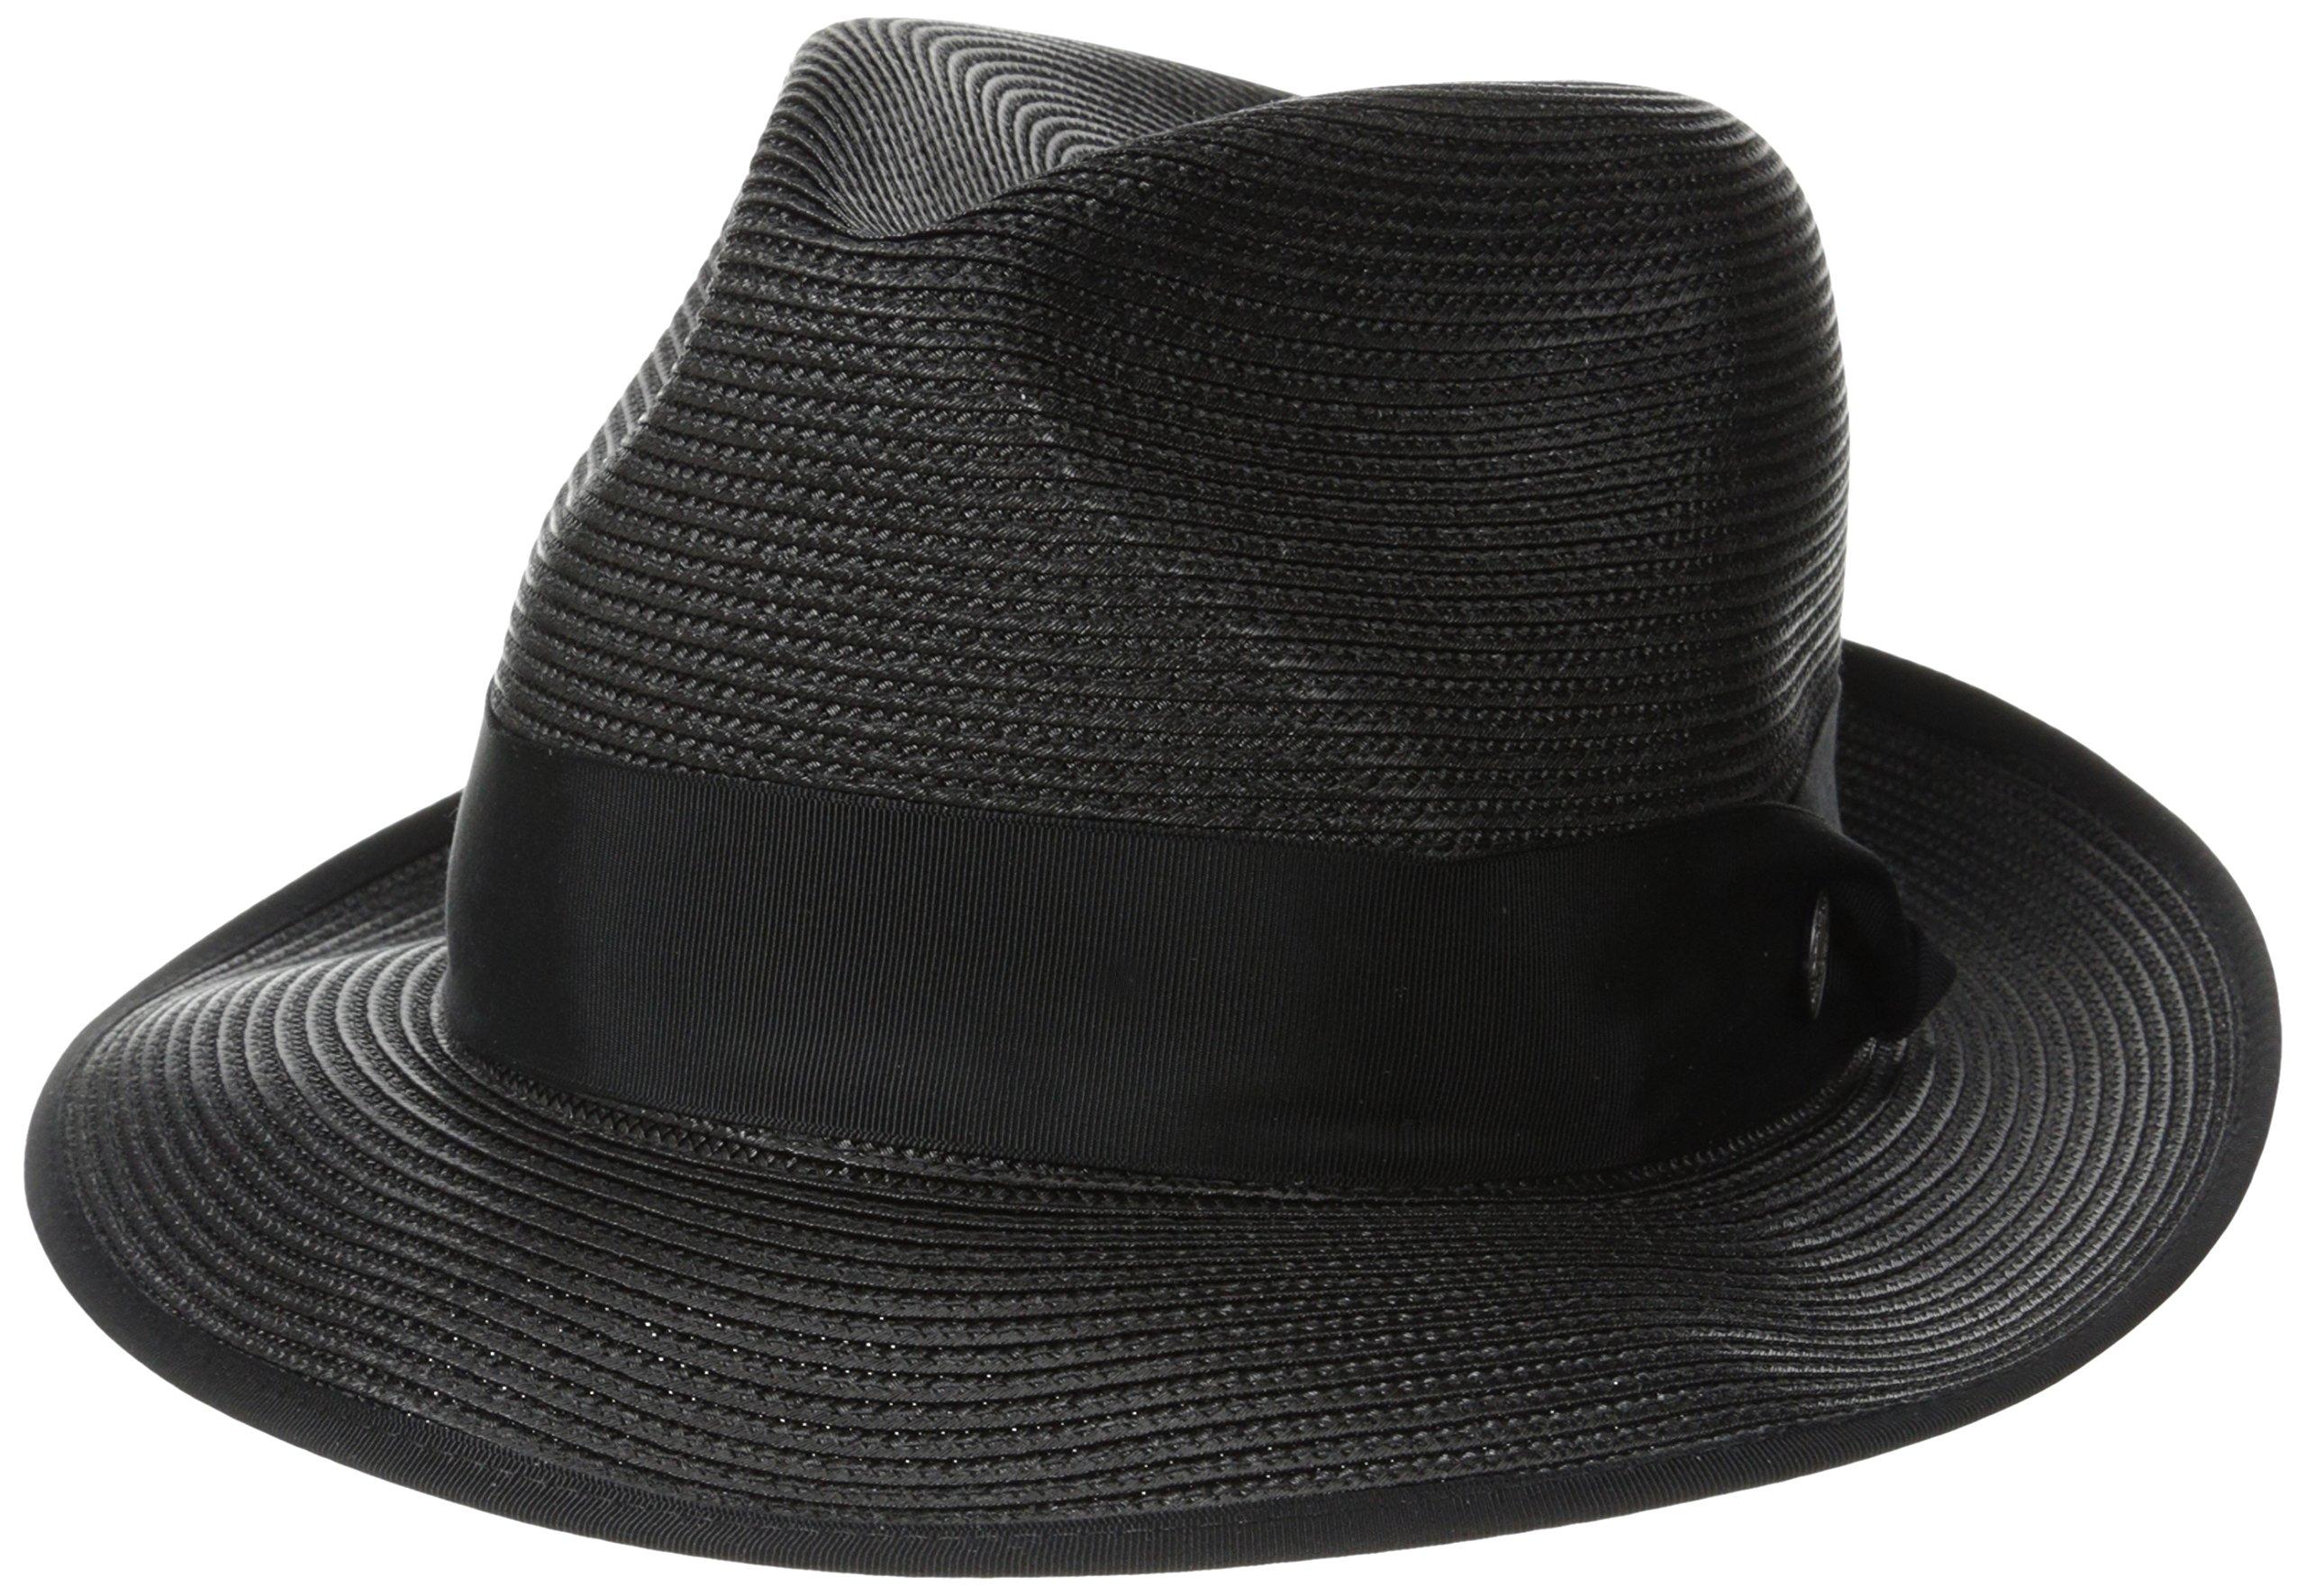 Stetson Latte Florentine Milan Straw Hat in Black for Men - Lyst